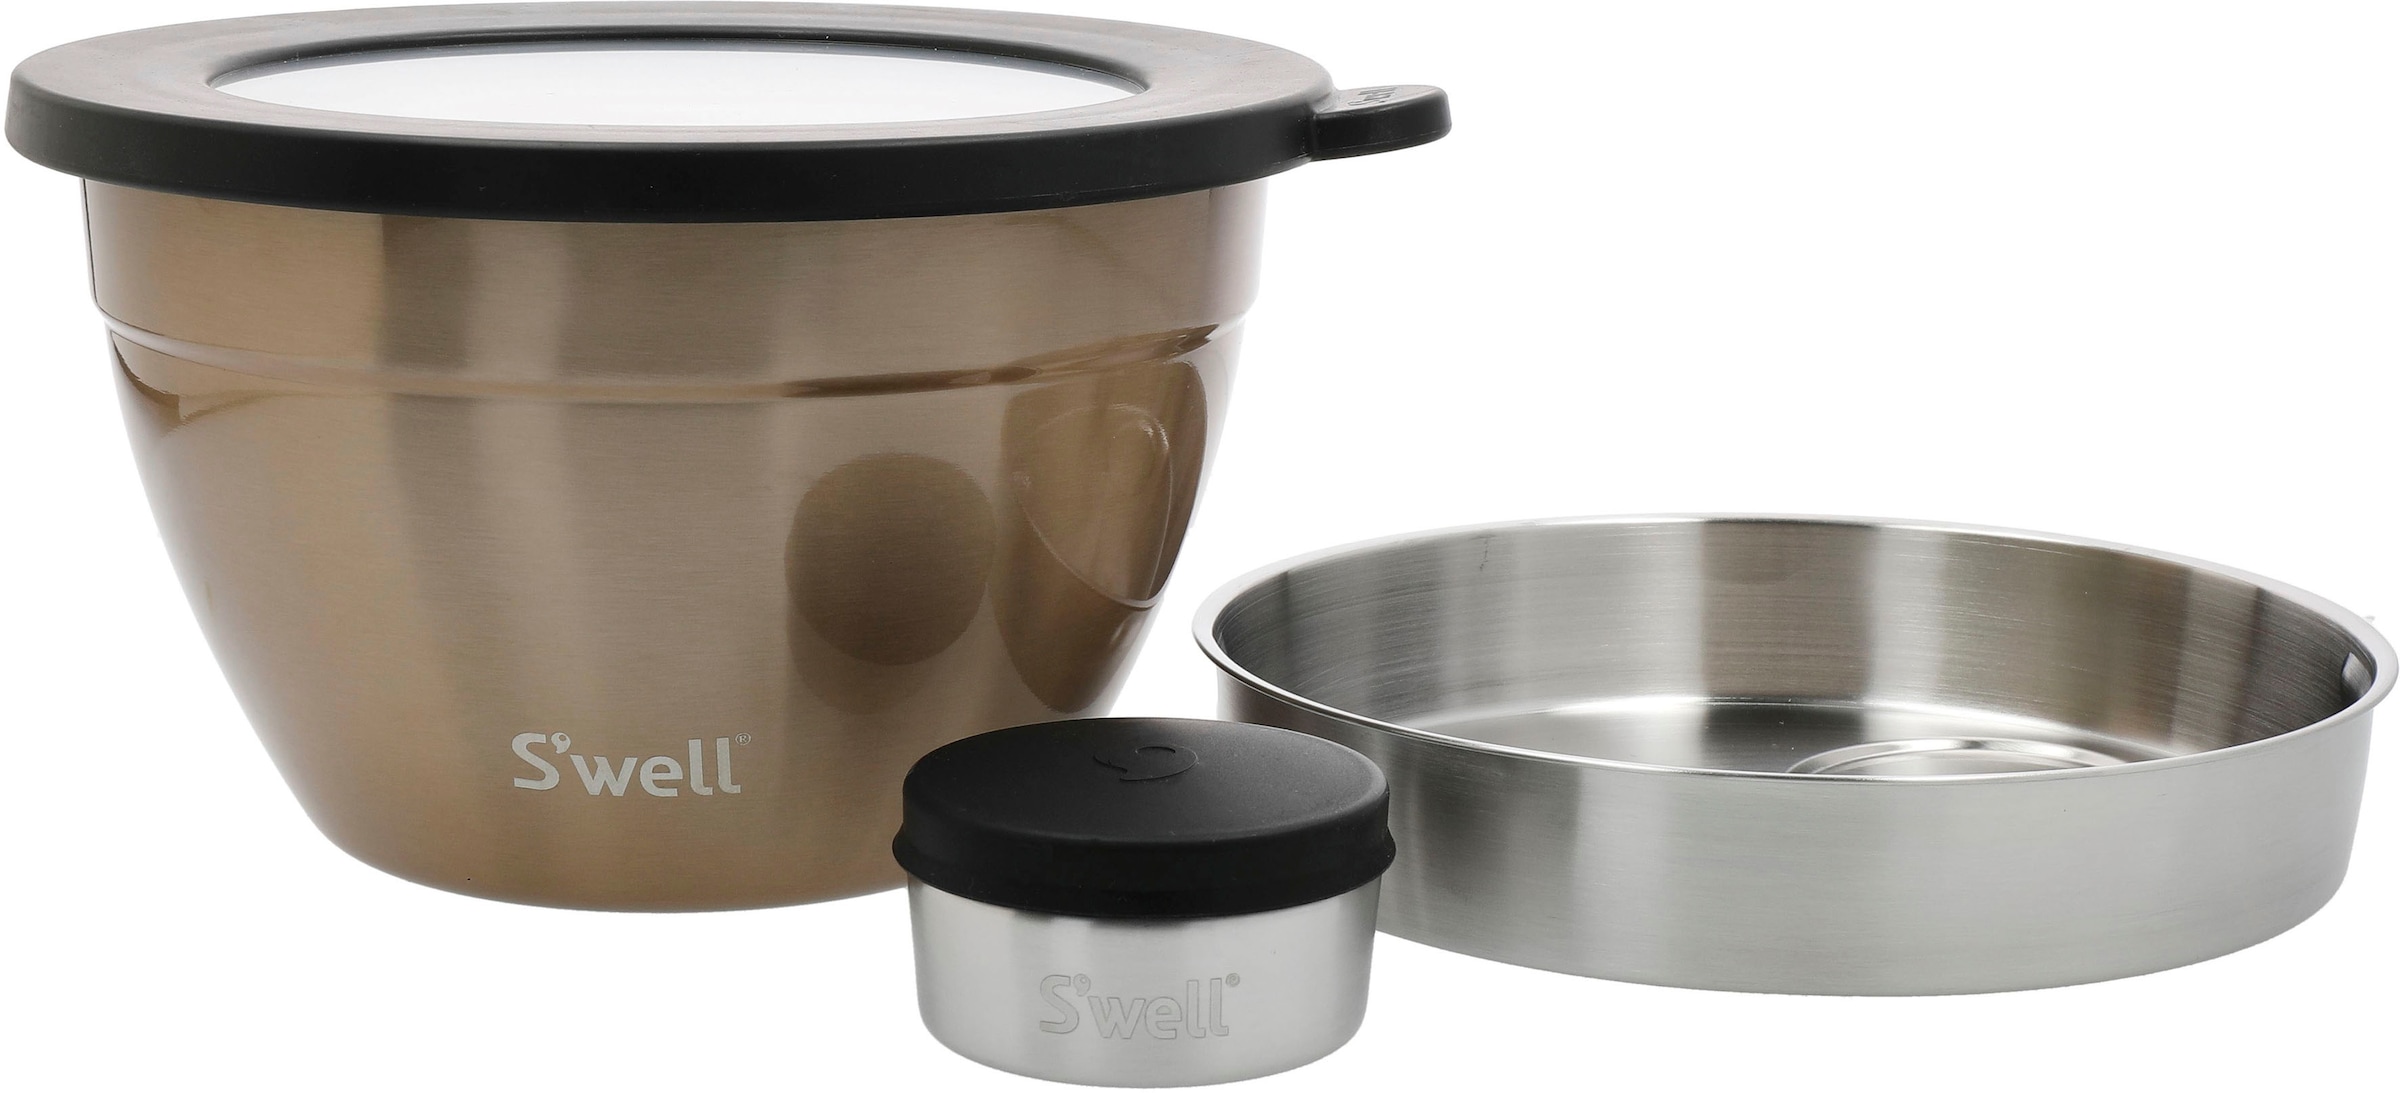 Swell Salatschüssel "Swell Calacatta Gold Salad Bowl Kit, 1.9L", 3 tlg., aus Edelstahl, Therma-Swell-Technologie mit vak